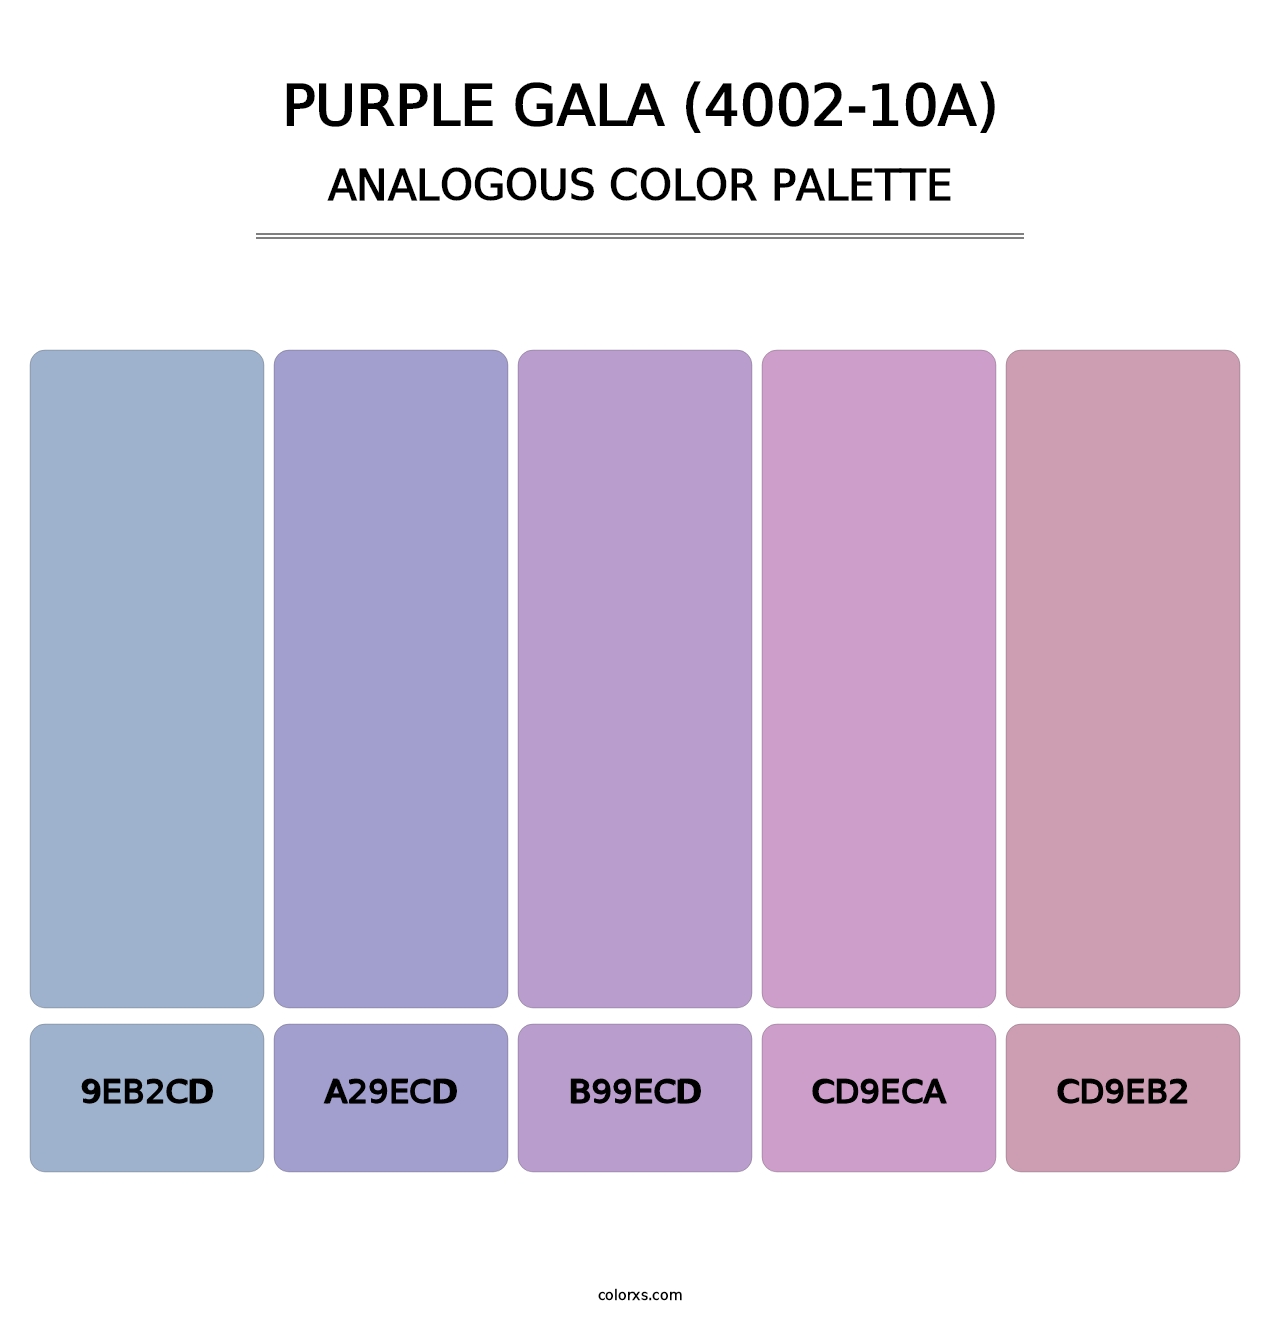 Purple Gala (4002-10A) - Analogous Color Palette